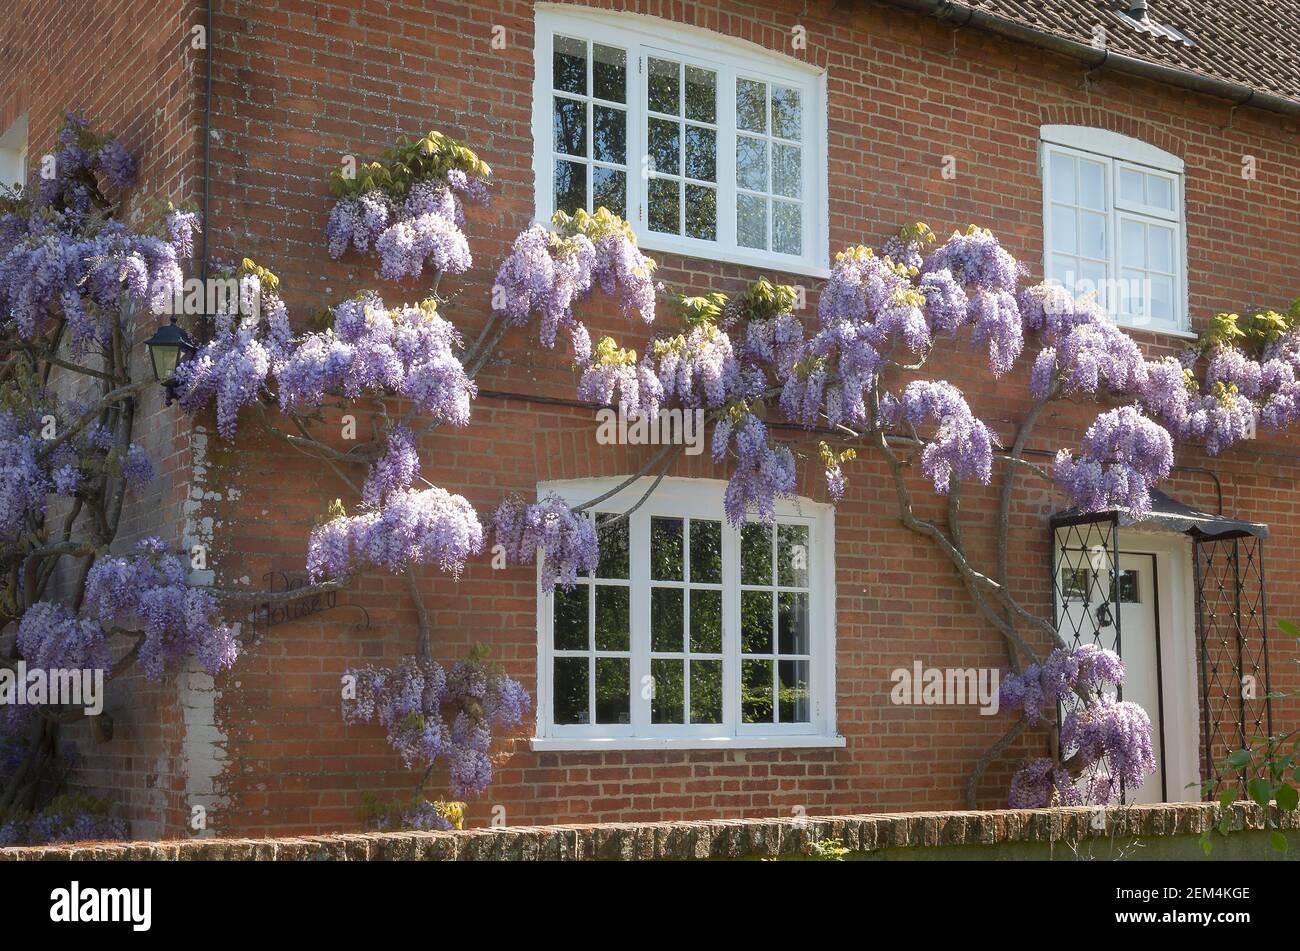 Glicine sinensis che cresce sulle pareti e fioriscono aggiungendo bellezza Ad una vecchia casa colonica vittoriana in Inghilterra Regno Unito Foto Stock